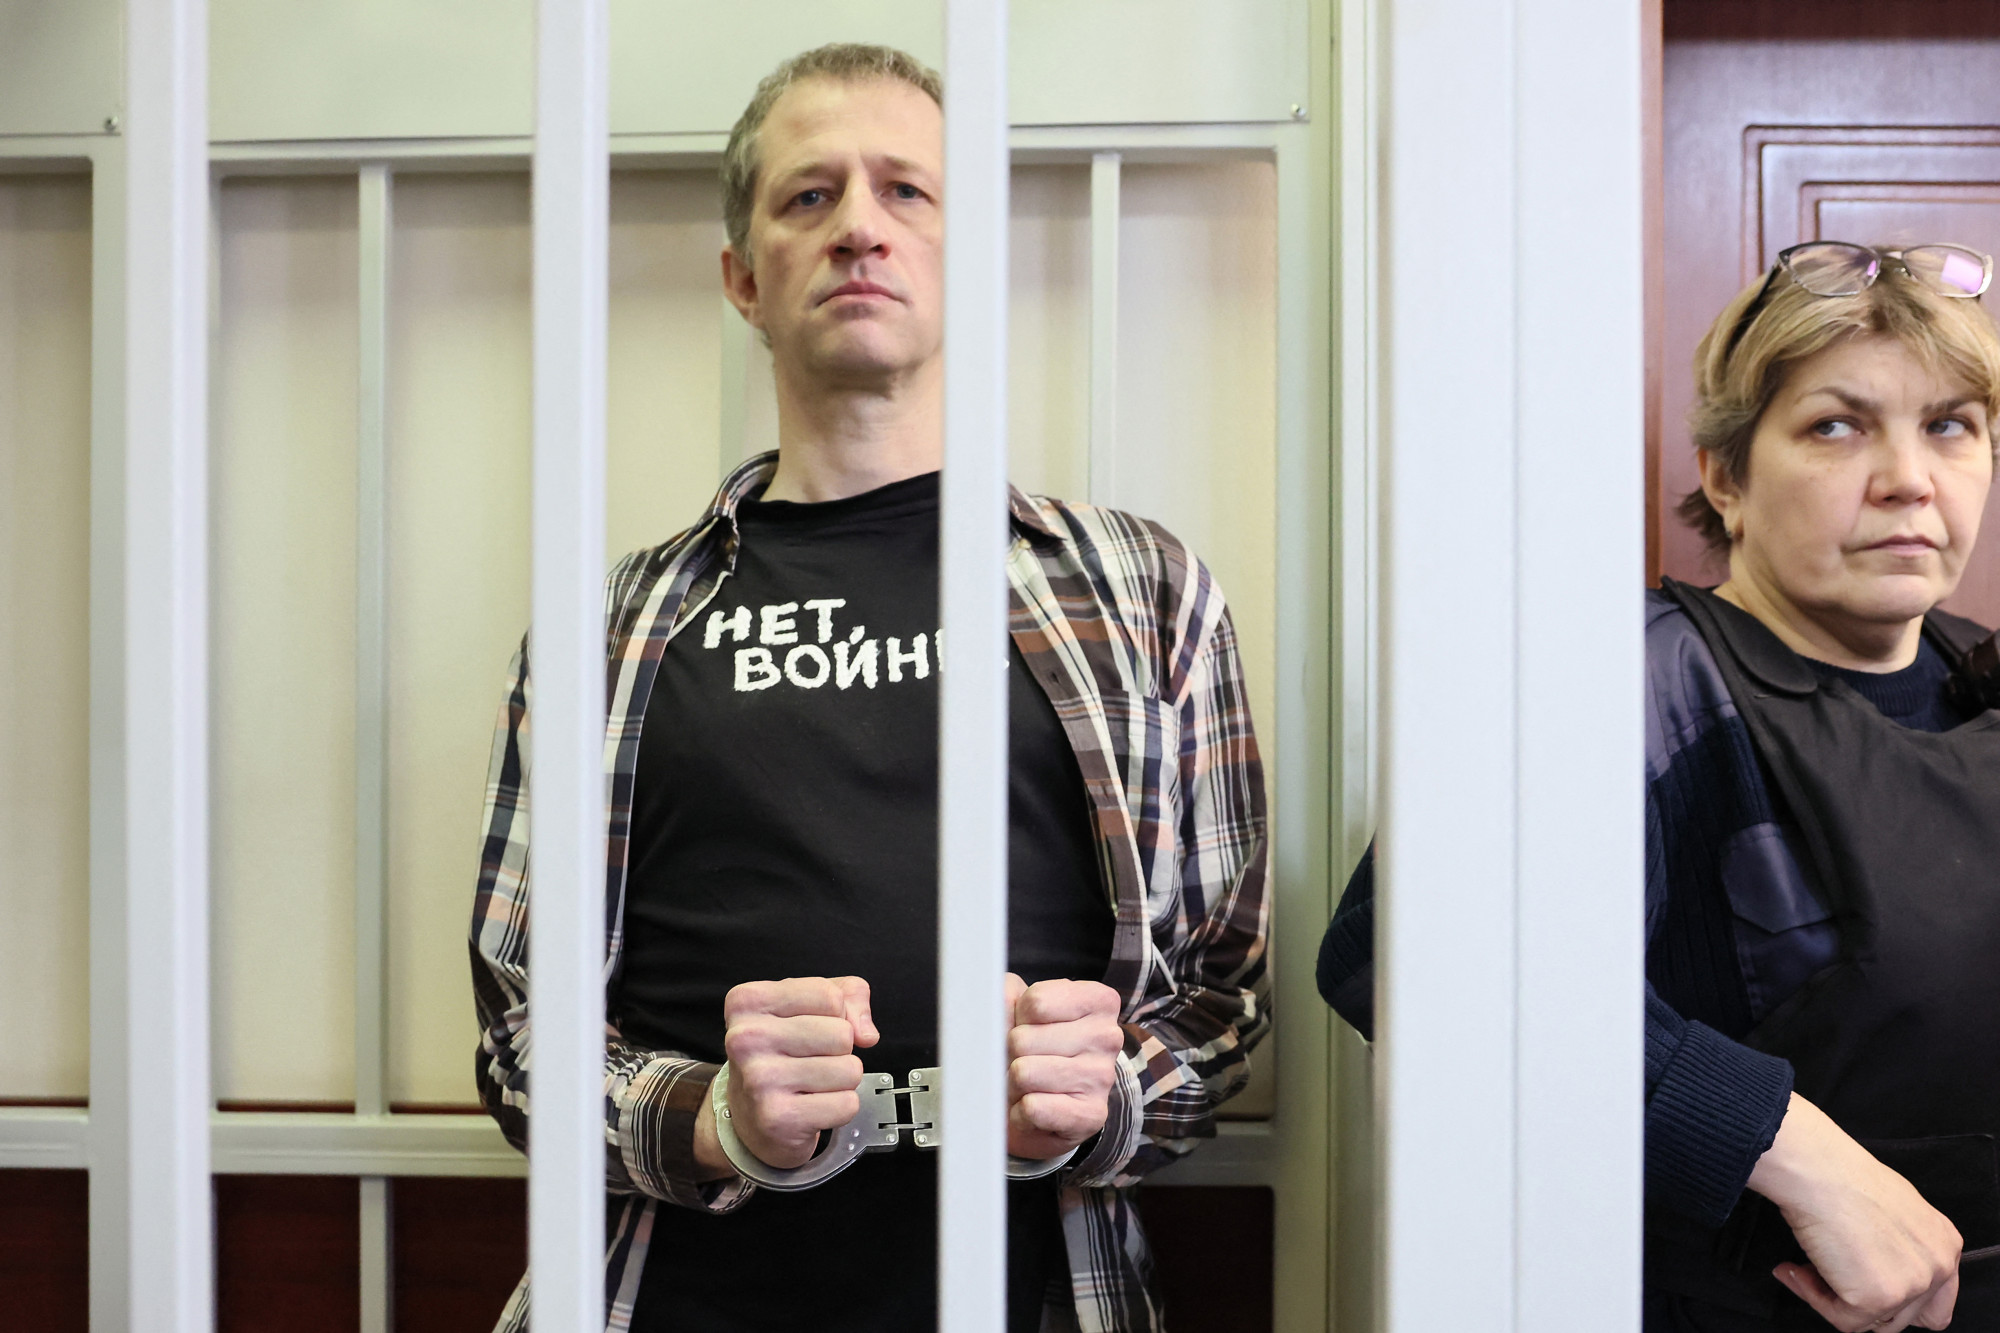 Az utolsó szó jogán minden ukrántól bocsánatot kért egy börtönre ítélt orosz újságíró